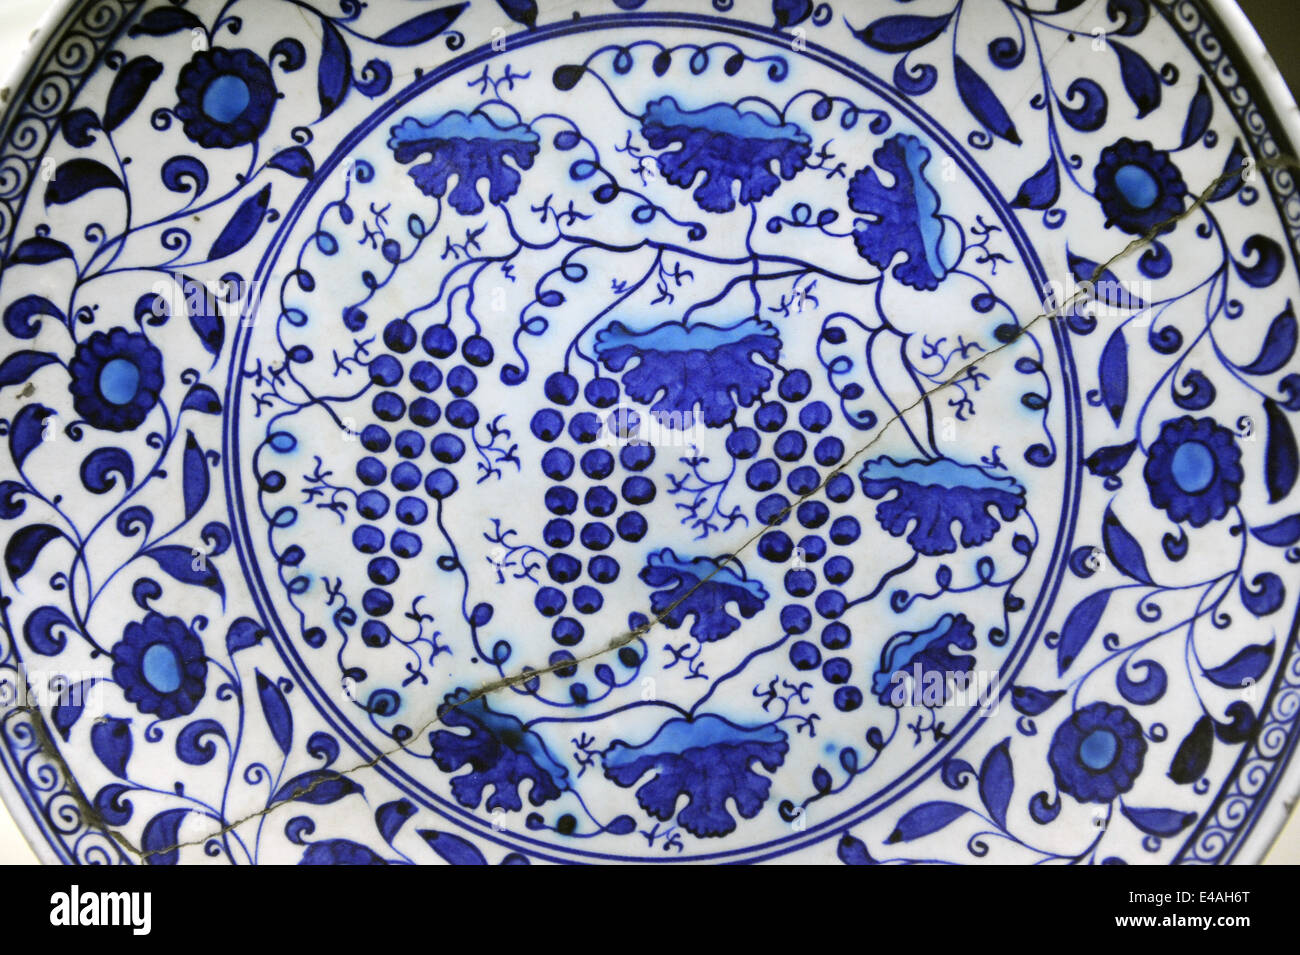 Placa azul y blanco con turquesa, 1530-1545. Acristalado. Iznik. Museo de Kiosco de azulejos. Museo Arqueológico. Estambul. Turquía. Foto de stock